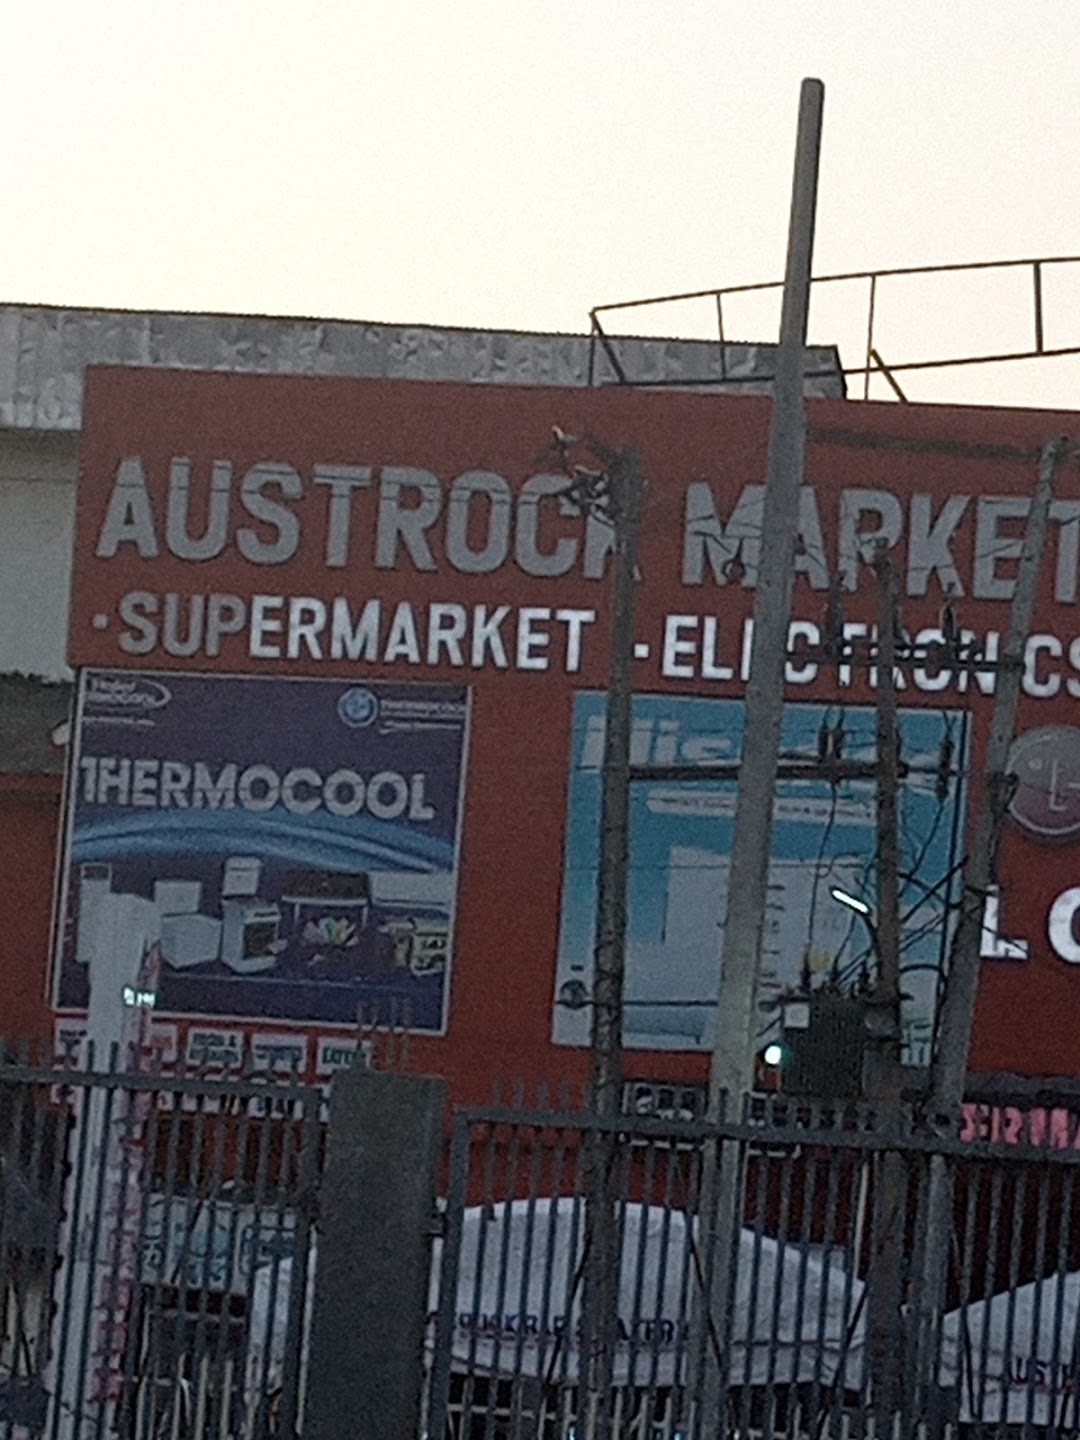 Austrock Market